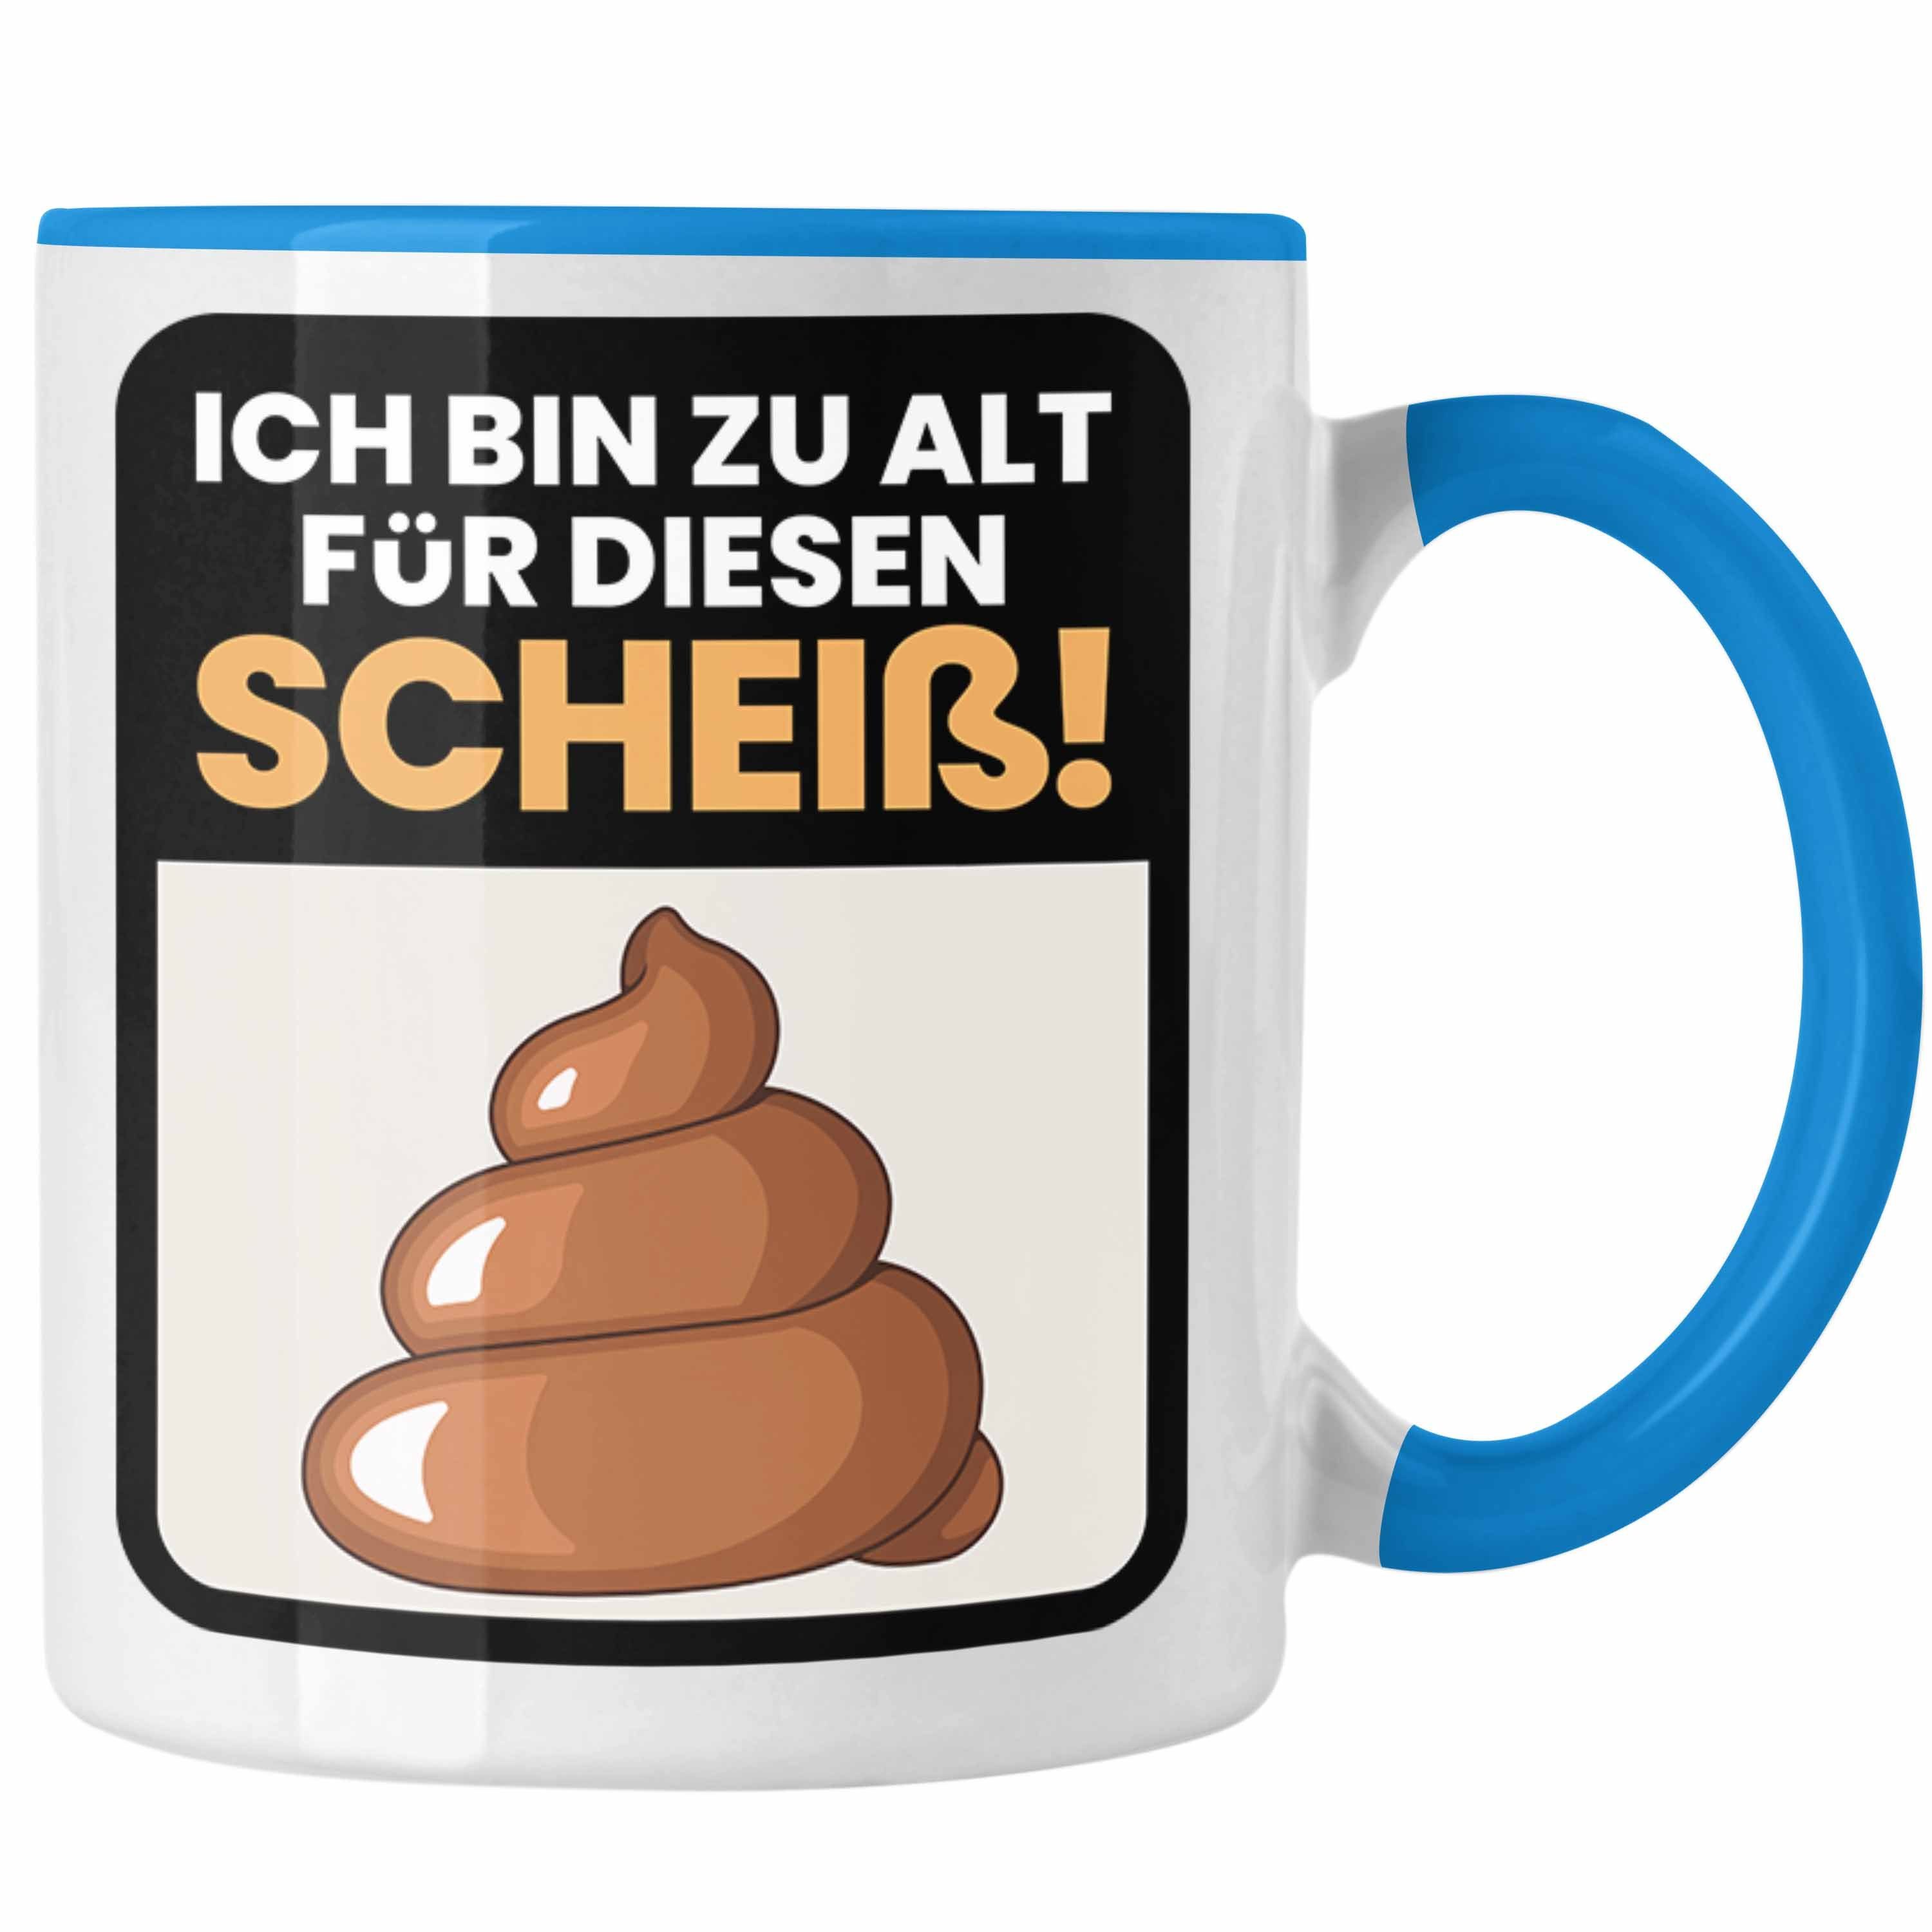 Trendation Tasse Lustiger Spruch Kaffee-Becher Tasse Ich Bin Zu Als Für Diesen Sch**** Blau